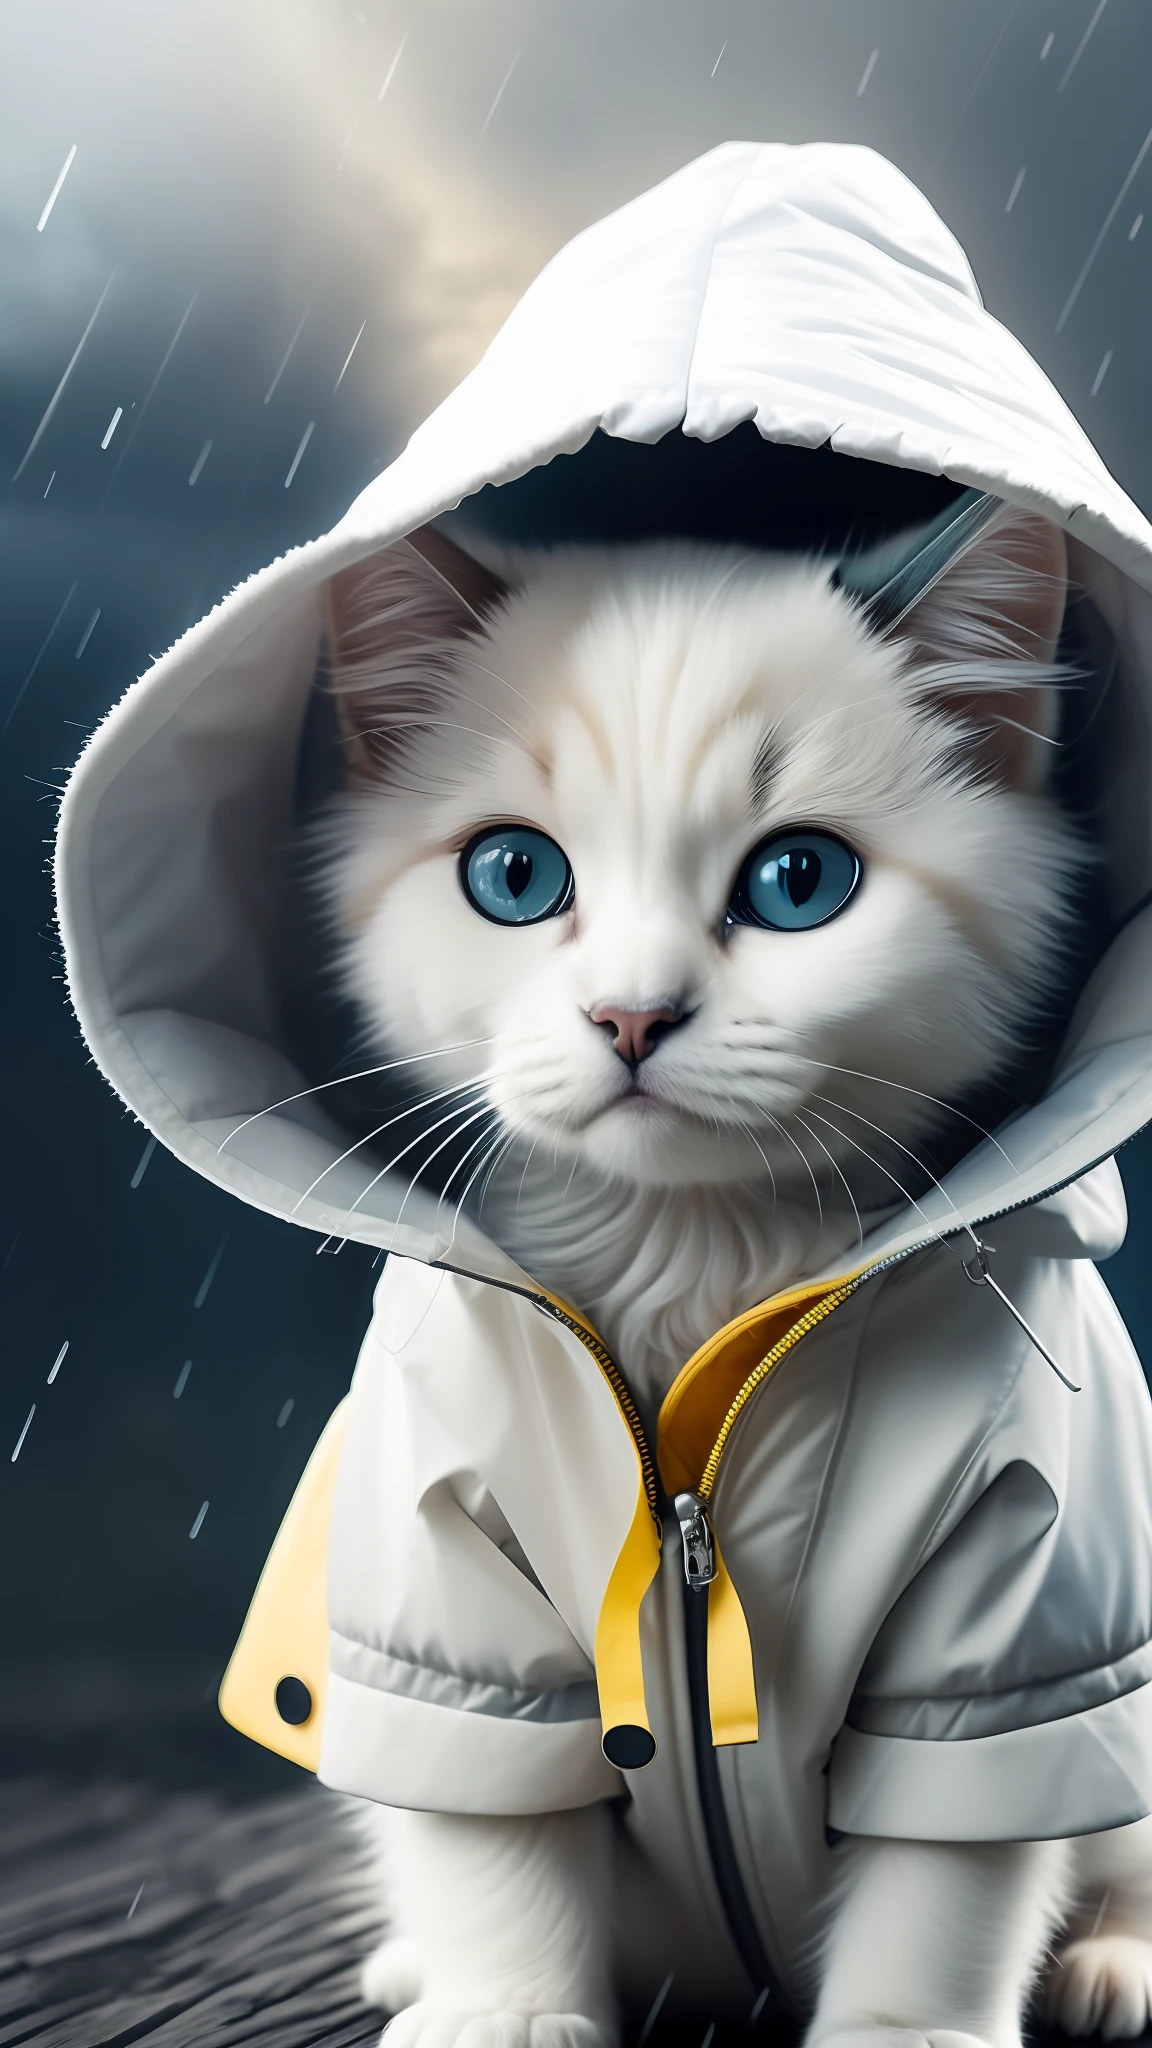 レインコートを着た白い猫の子犬, 荒れた天気, 映画のような照明と超リアルなディテール, リアルな写真, 映画撮影, 信じられないほど詳細, 映画照明